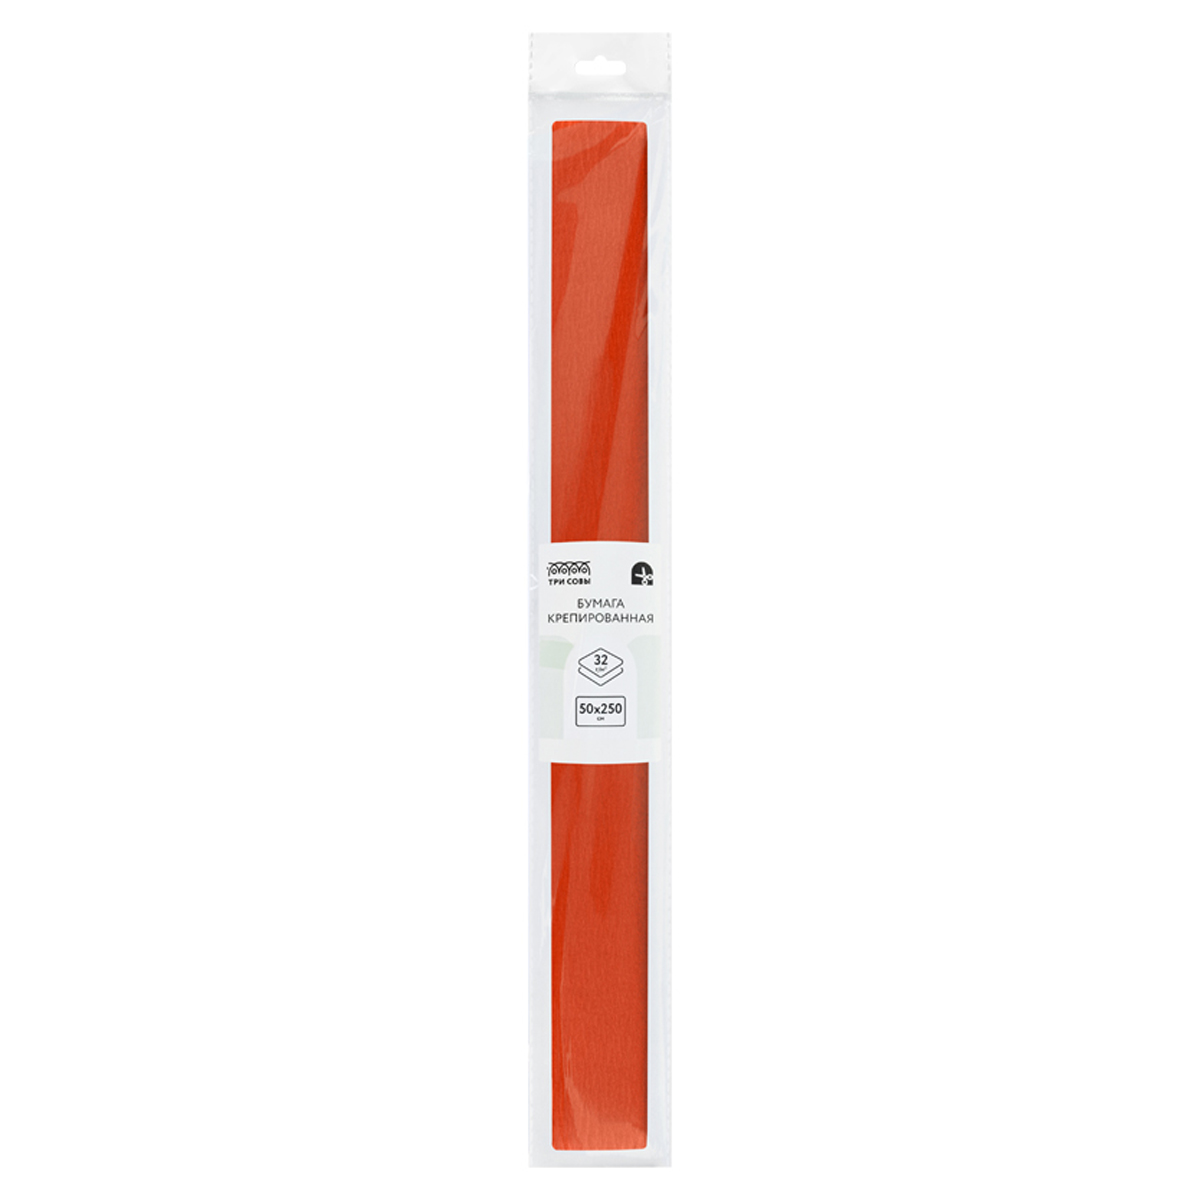 Бумага крепированная ТРИ СОВЫ, 50*250см, 32г/м2, темно-оранжевая, в рулоне, пакет с европо